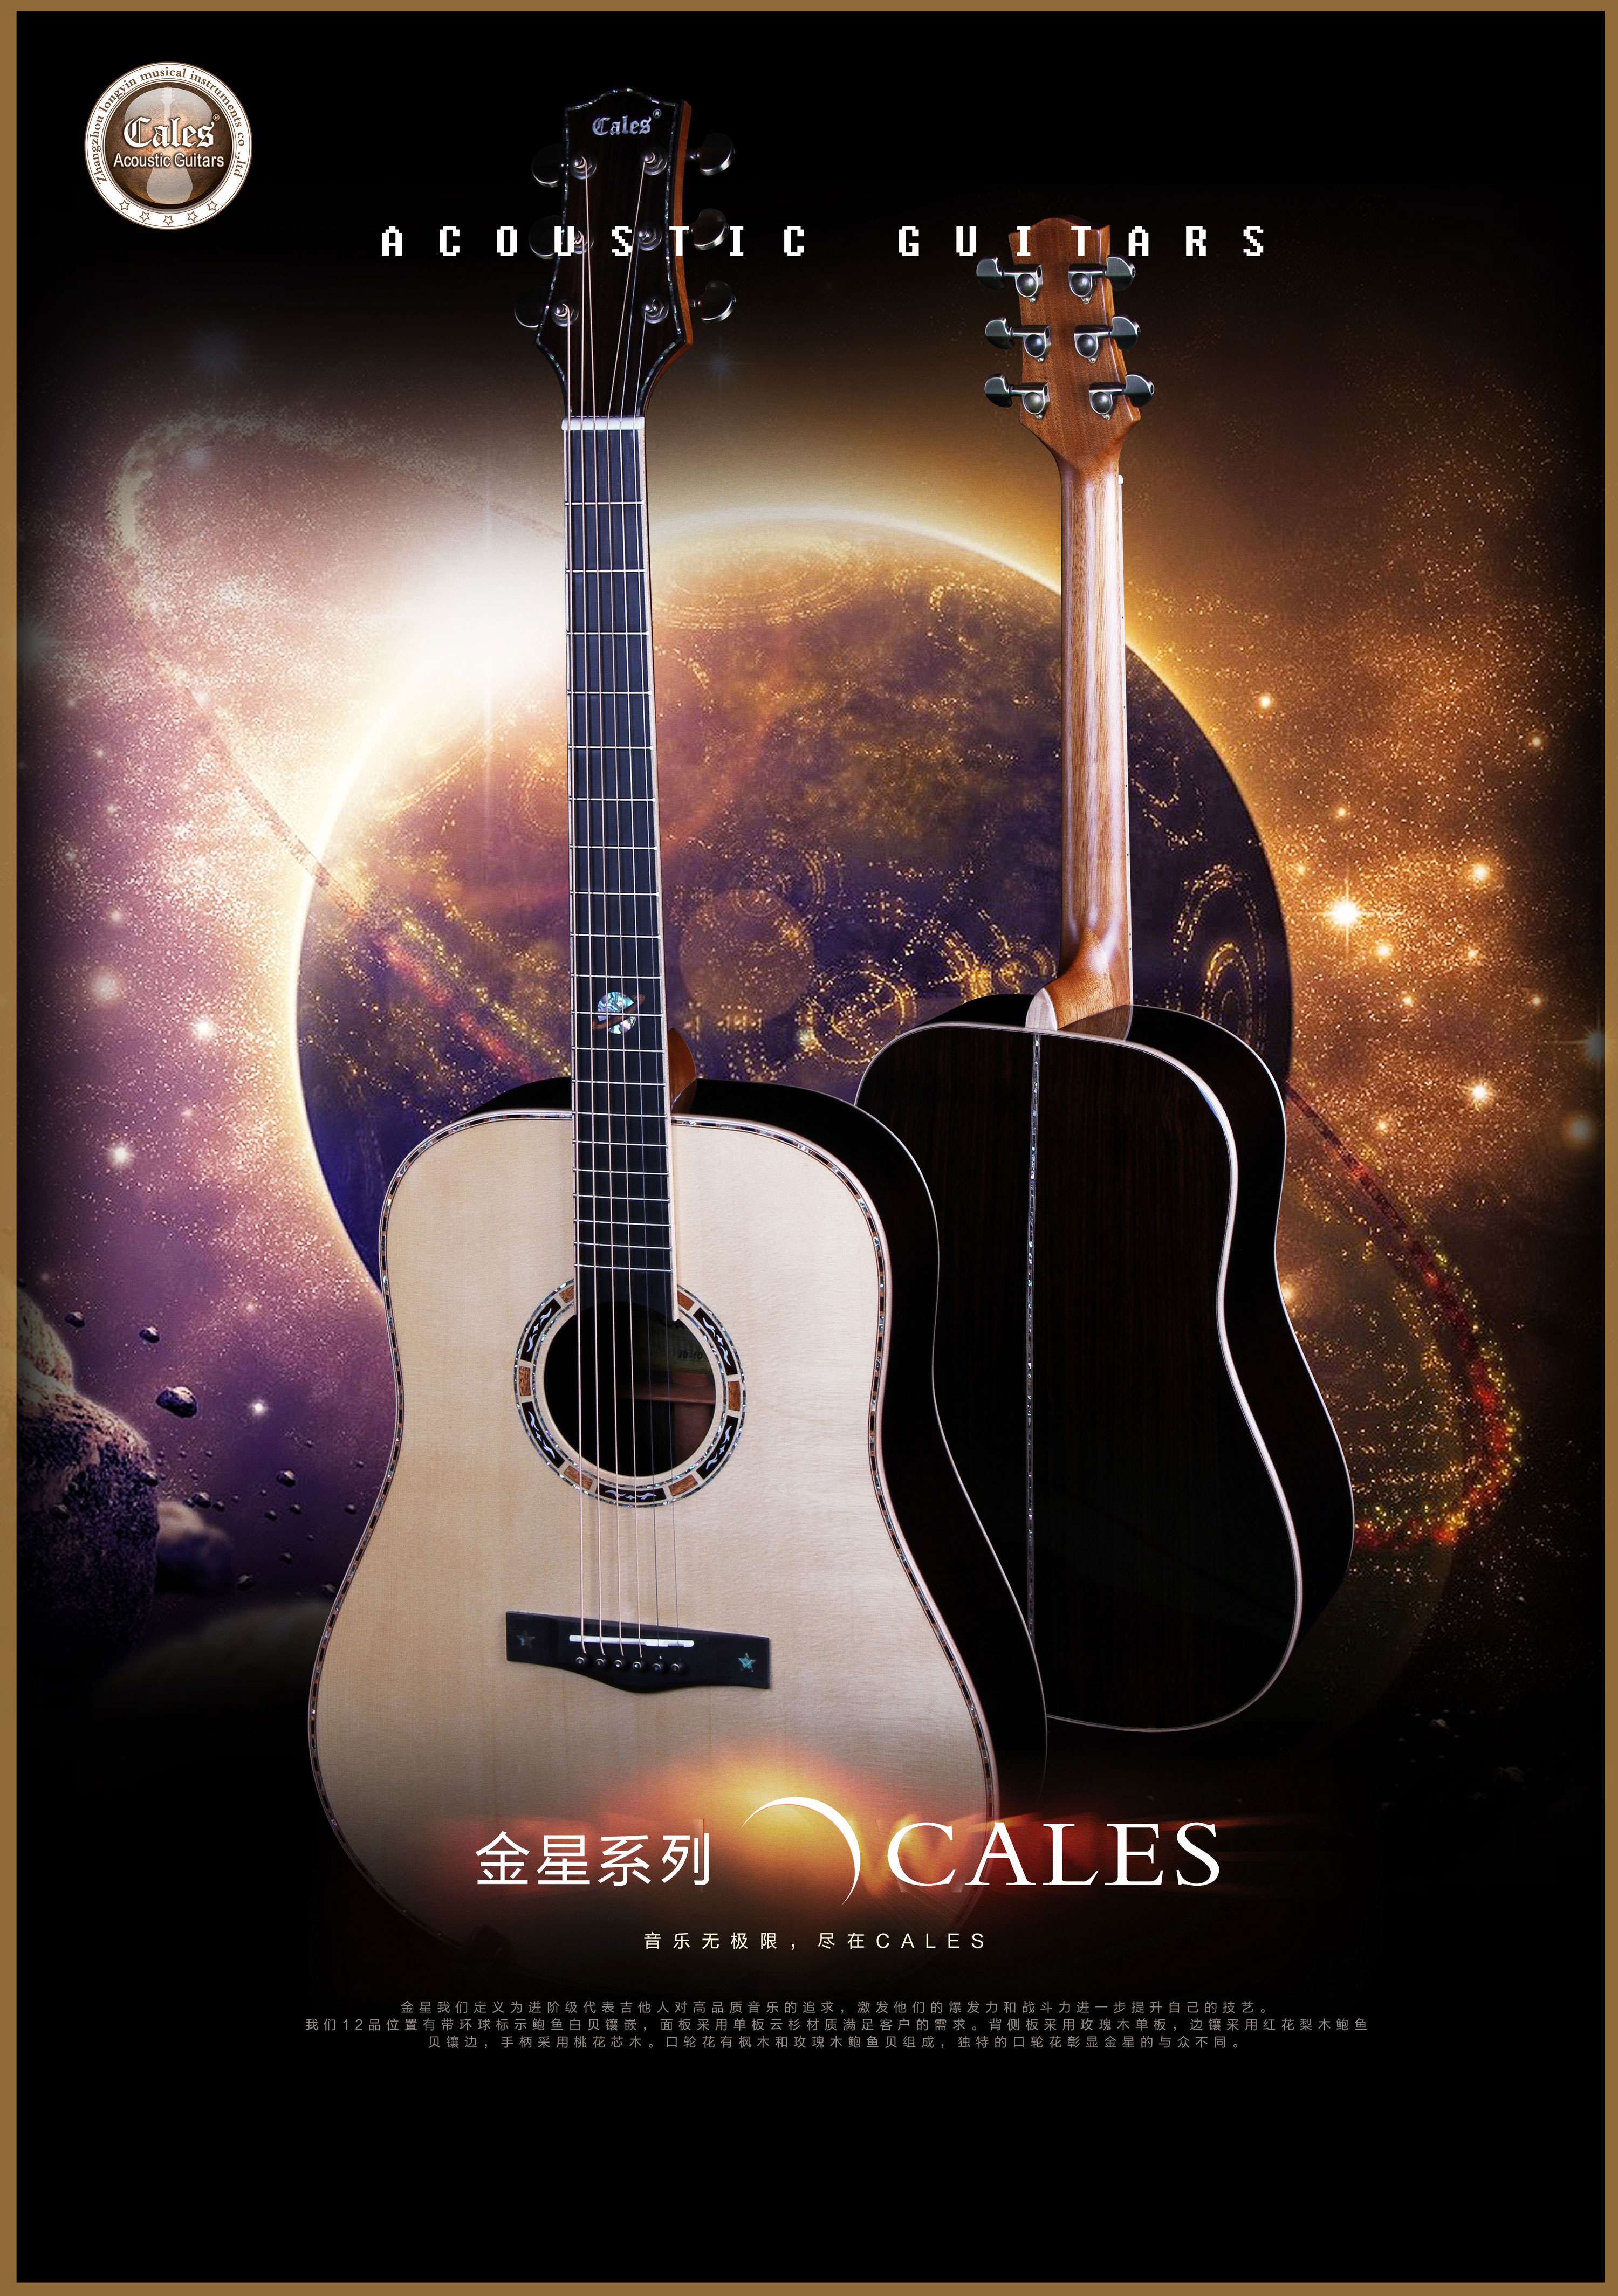 来自金星的吉他——卡勒斯JD-10